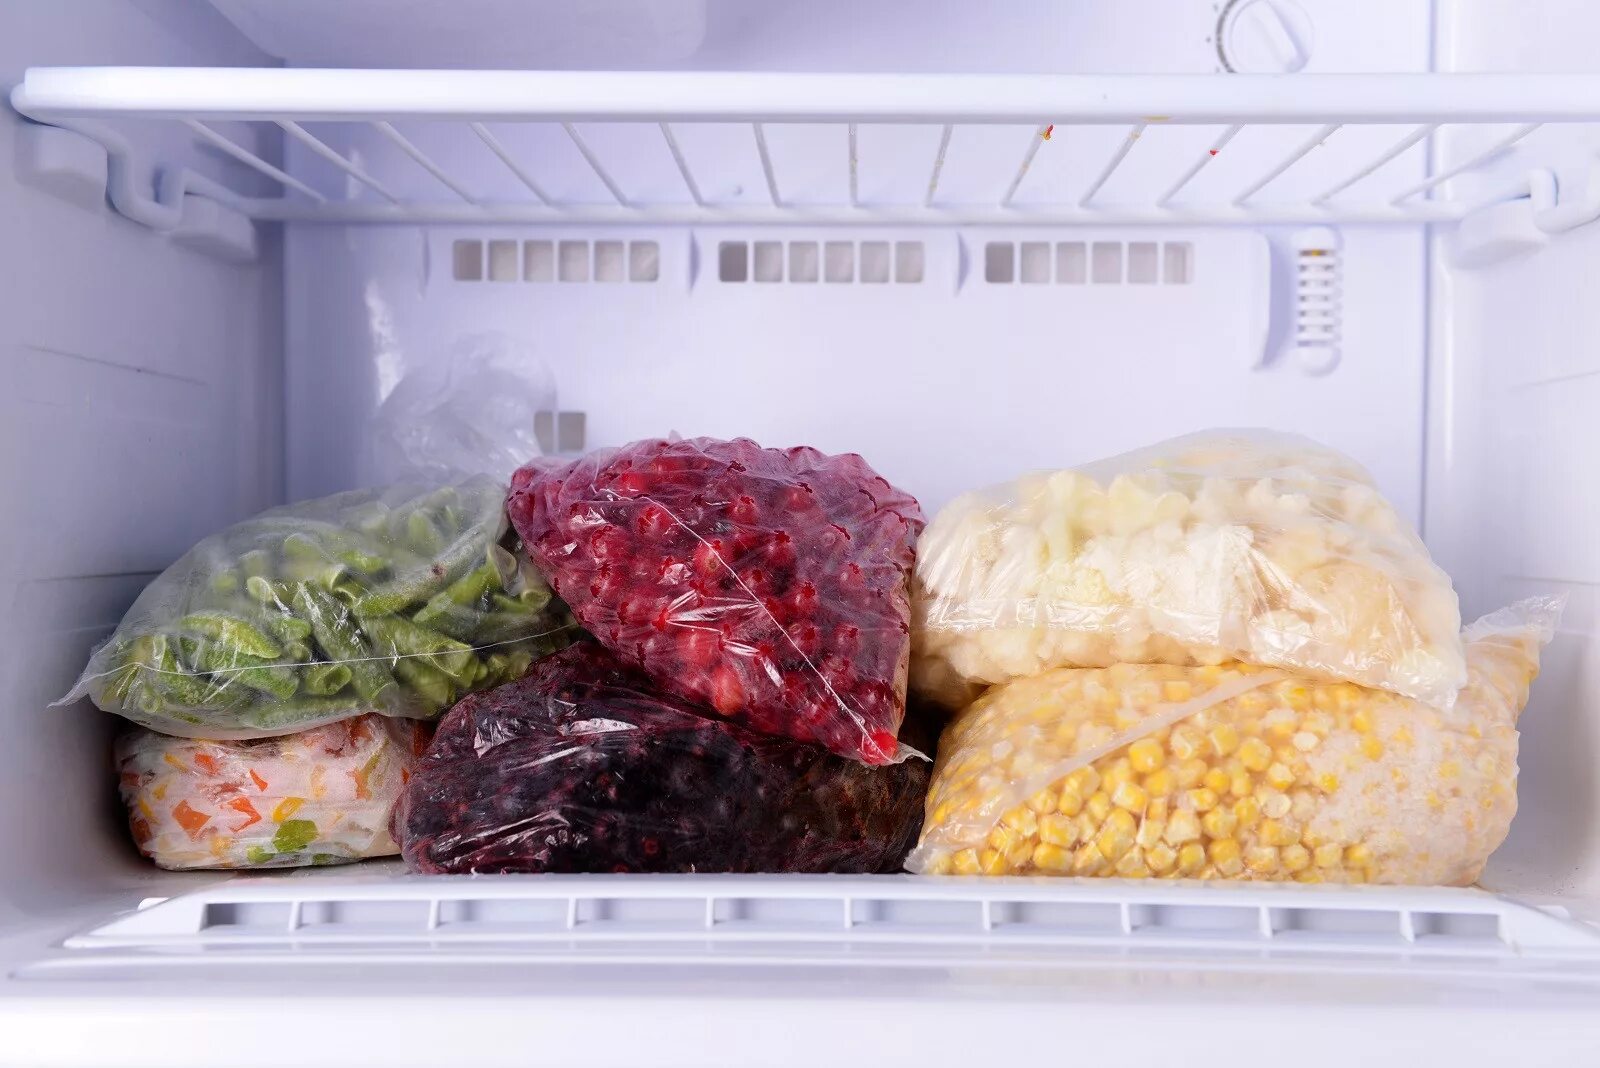 Лапша в холодильнике. Овощи в морозилке. Продукты в морозилке. Морозильник с продуктами. Заморозка продуктов в морозильной камере.